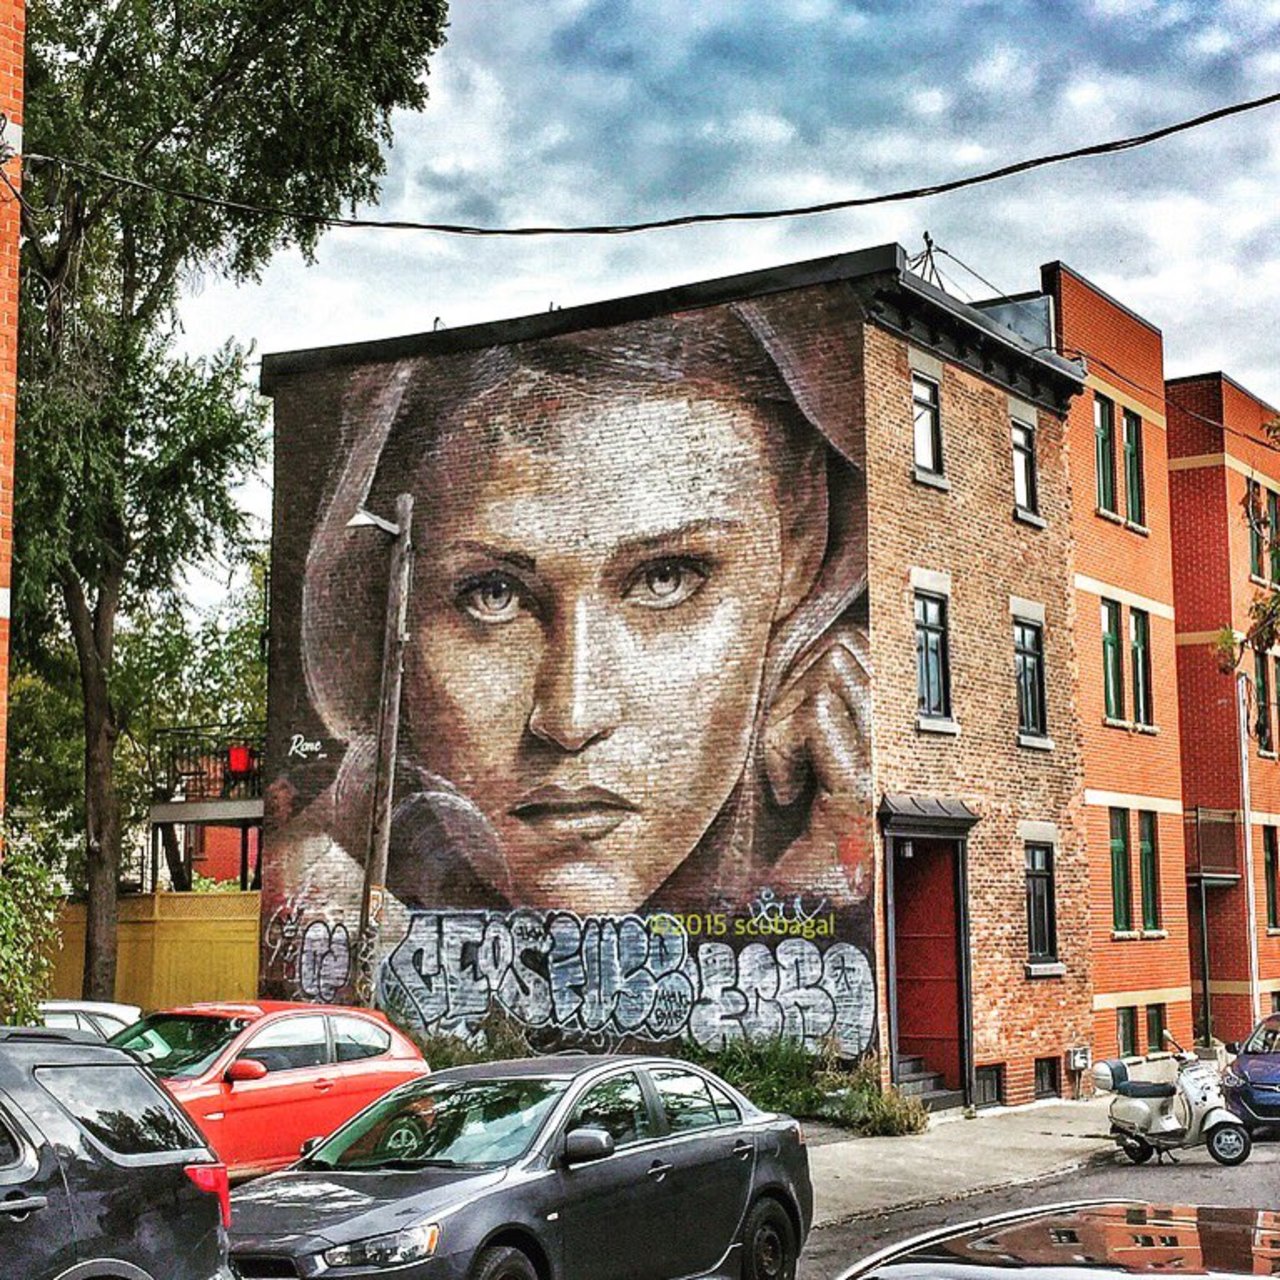 RT @ShaniaSuperlove: ThisScubaGal: The Walkflower | #Montreal #art #graffiti #streetart #streetphotography https://t.co/NzqkNrV7Dl https://goo.gl/t4fpx2